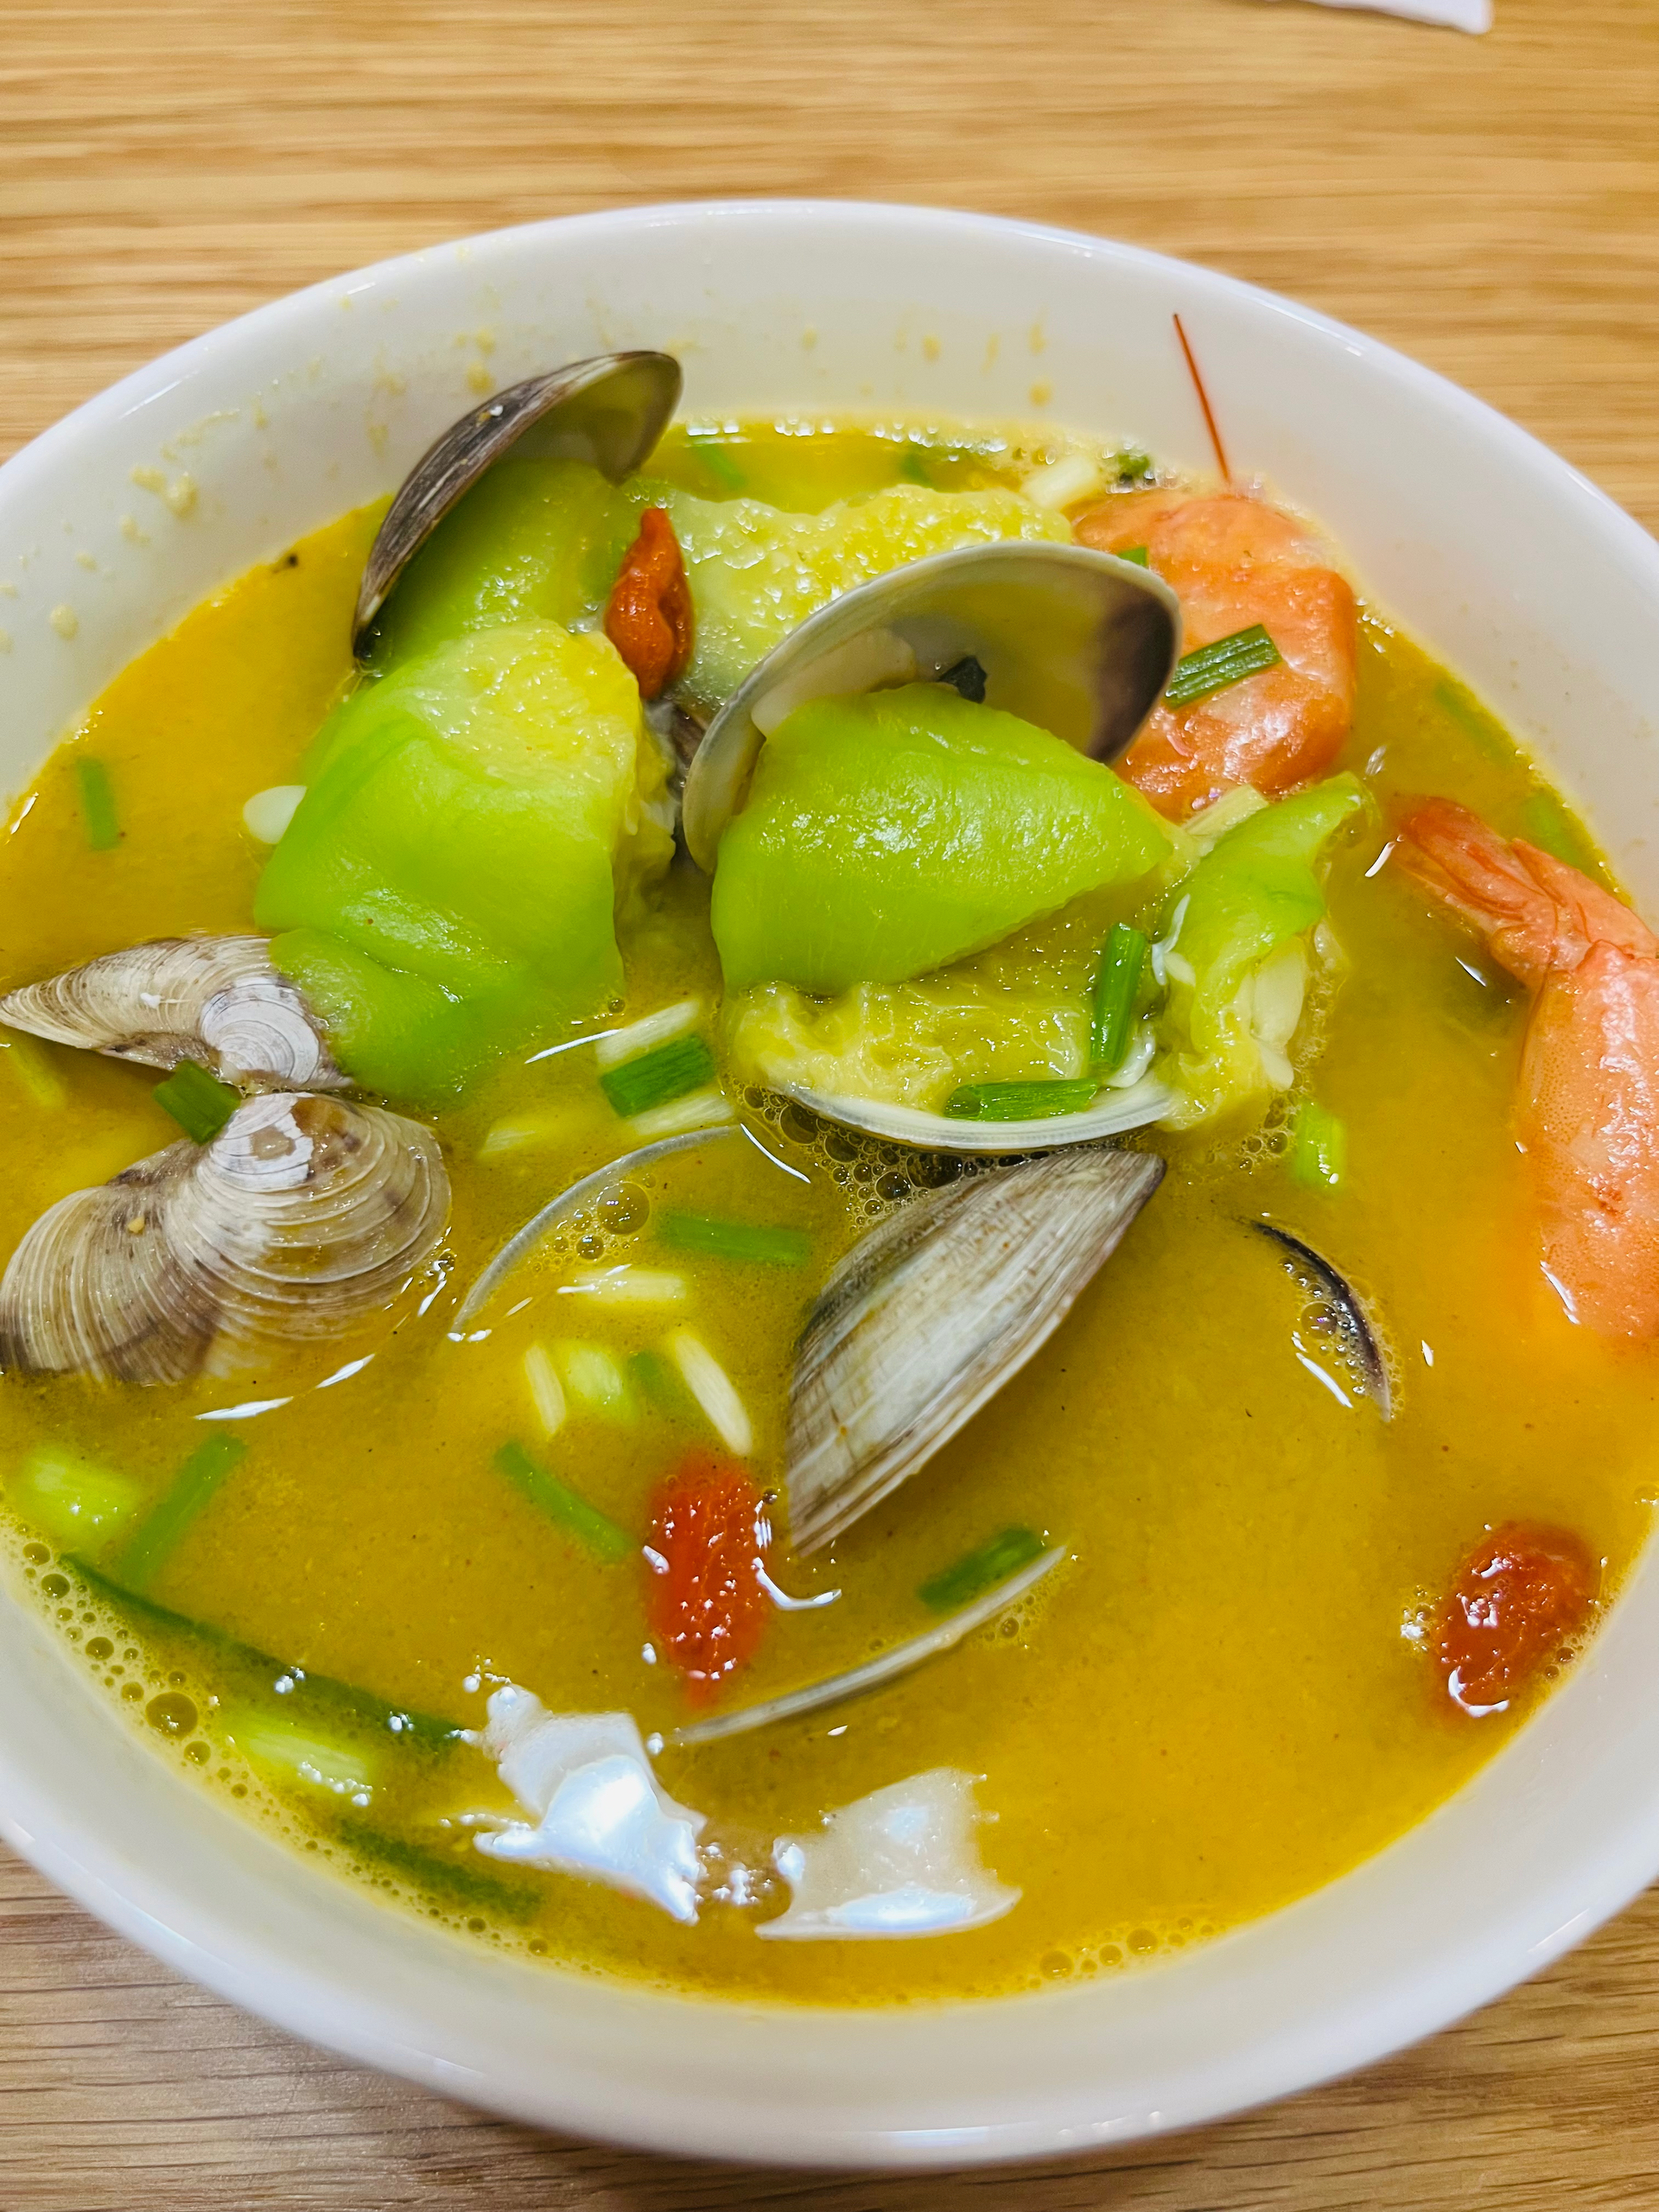 丝瓜海鲜汤的做法